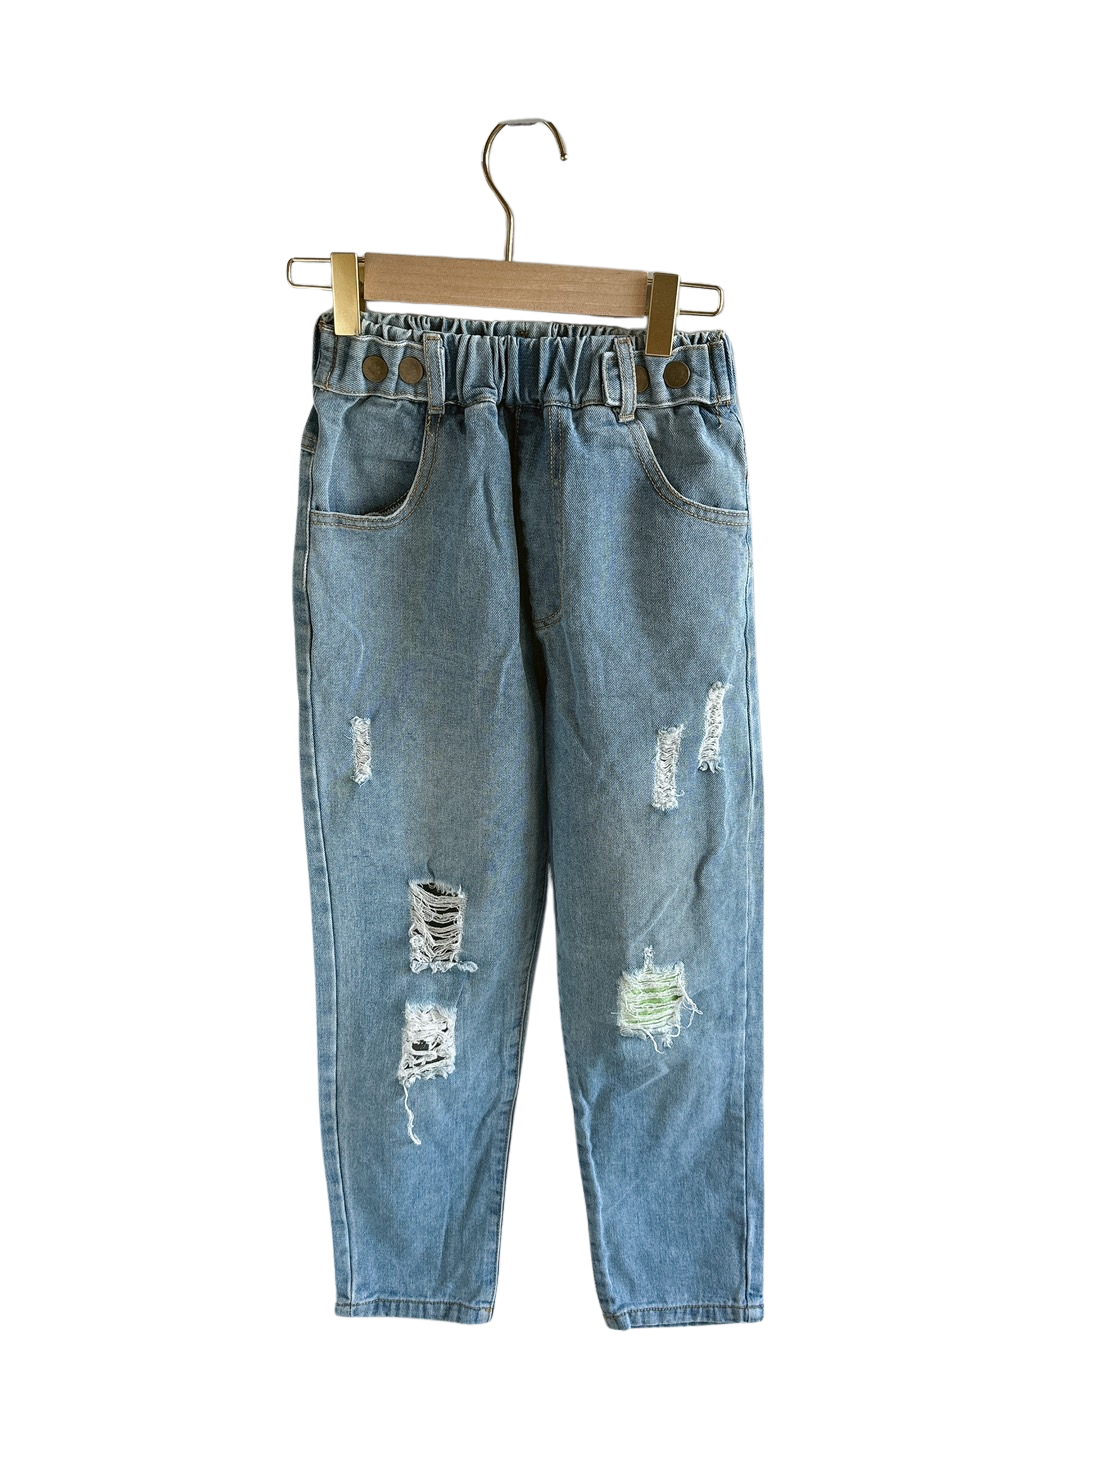 淺藍破洞造型兒童牛仔褲(140)